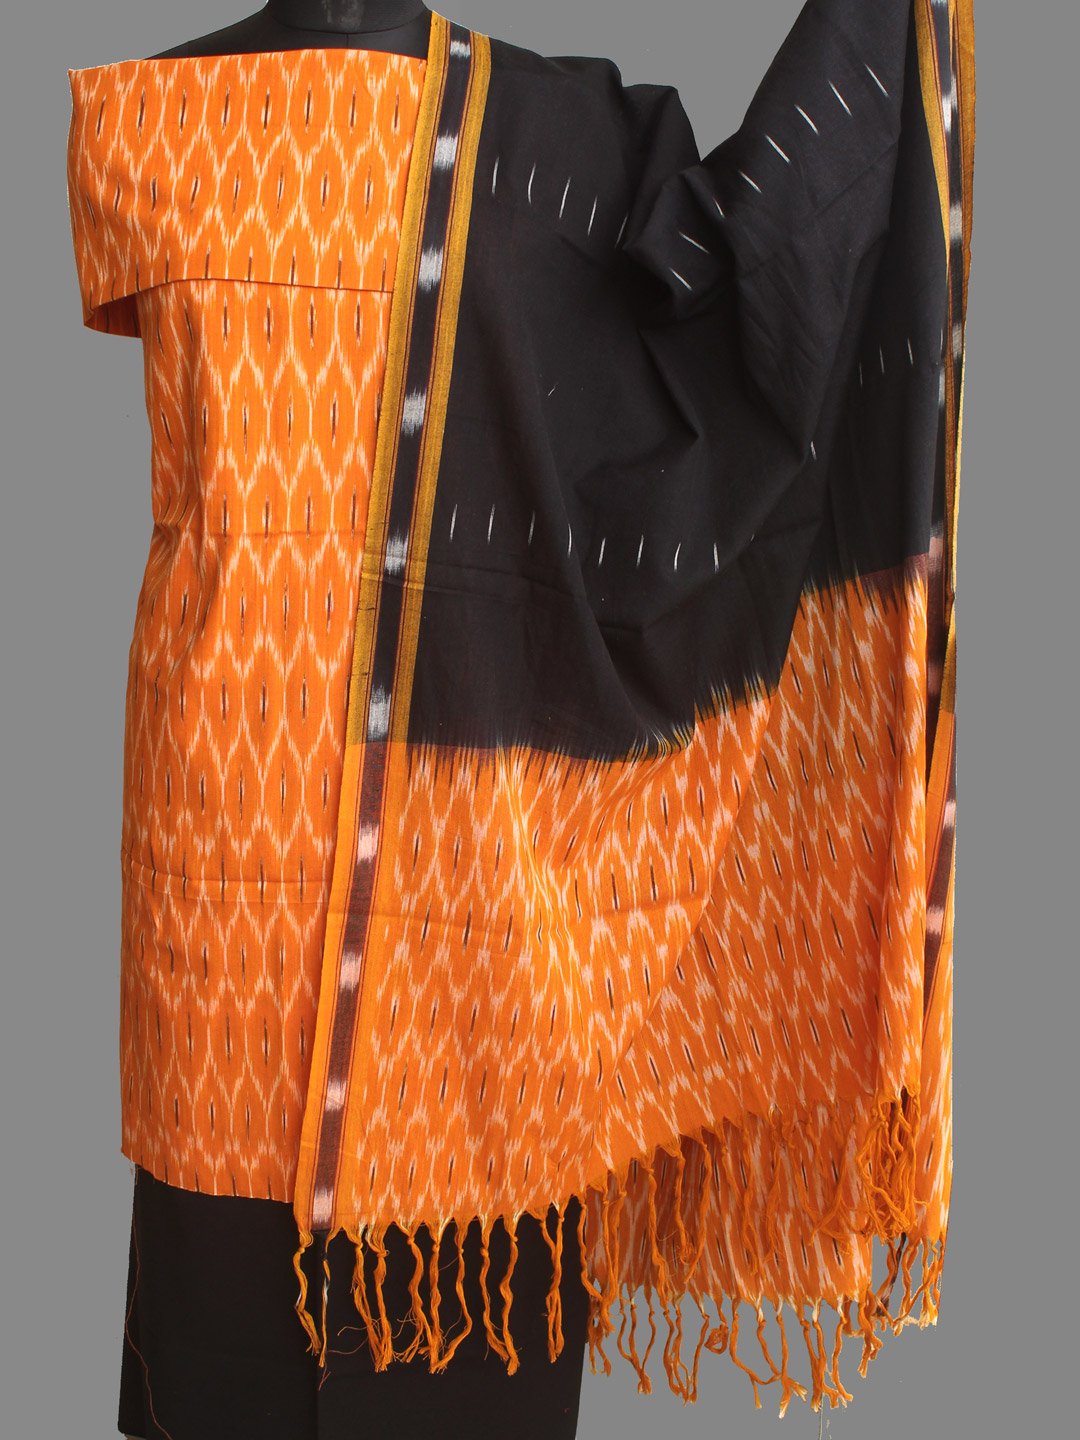 mangala sarees and suits in Mumbai - Retailer of Sarees & Salwar Suits